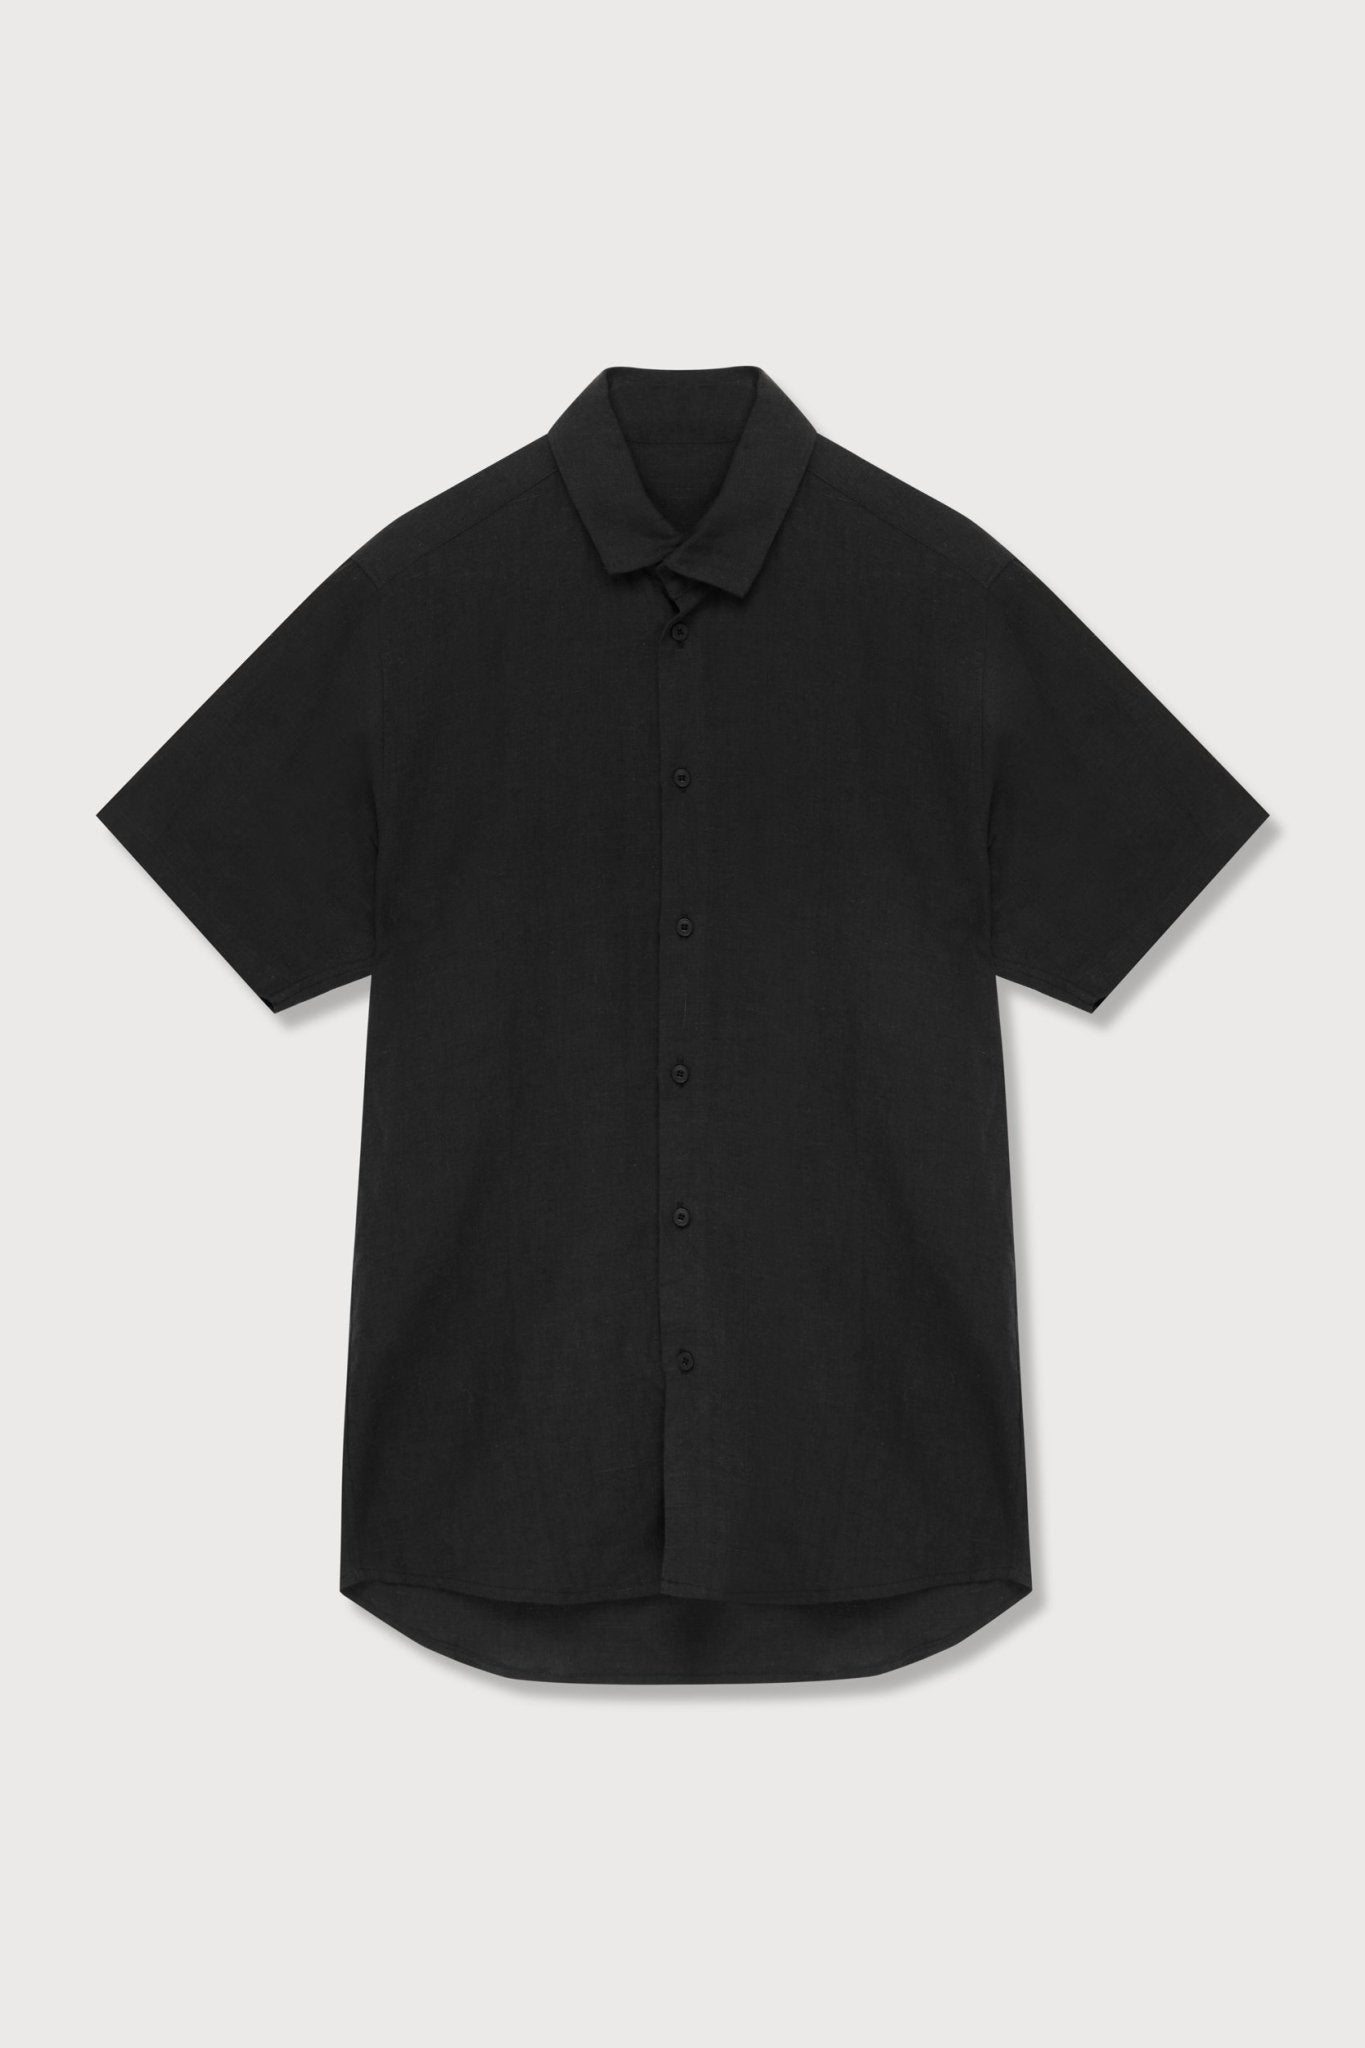 A.BCH A.04 Black Short Sleeve Button Up Shirt in Organic Linen